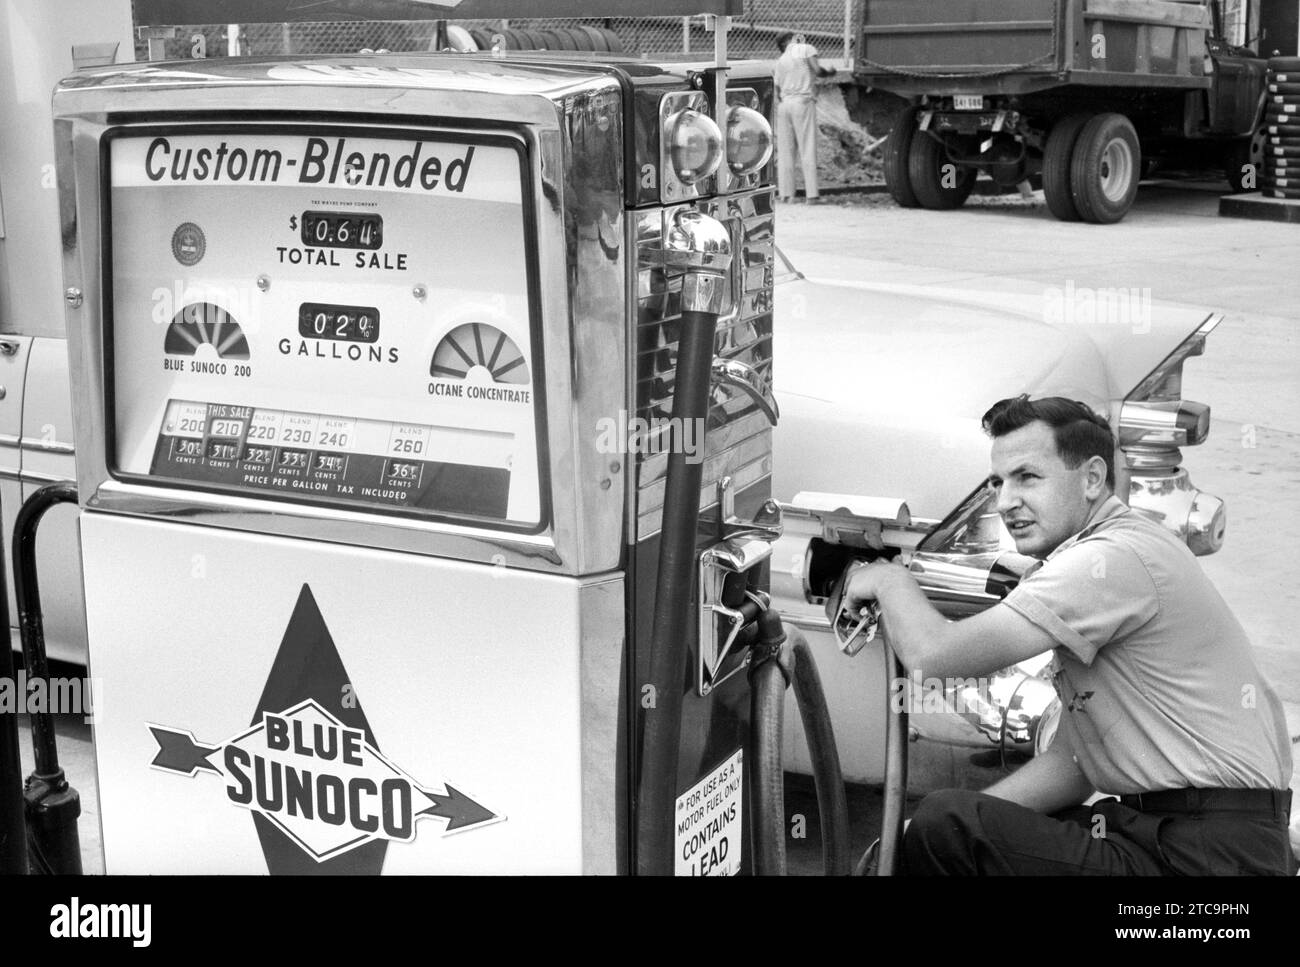 Préposé à la station-service remplissant le réservoir de voiture avec du gaz mélangé personnalisé à la station-service Sunoco, Washington, D.C., USA, Thomas J. O'Halloran, U.S. News & World Report Magazine Photography Collection, 5 juin 1958 Banque D'Images